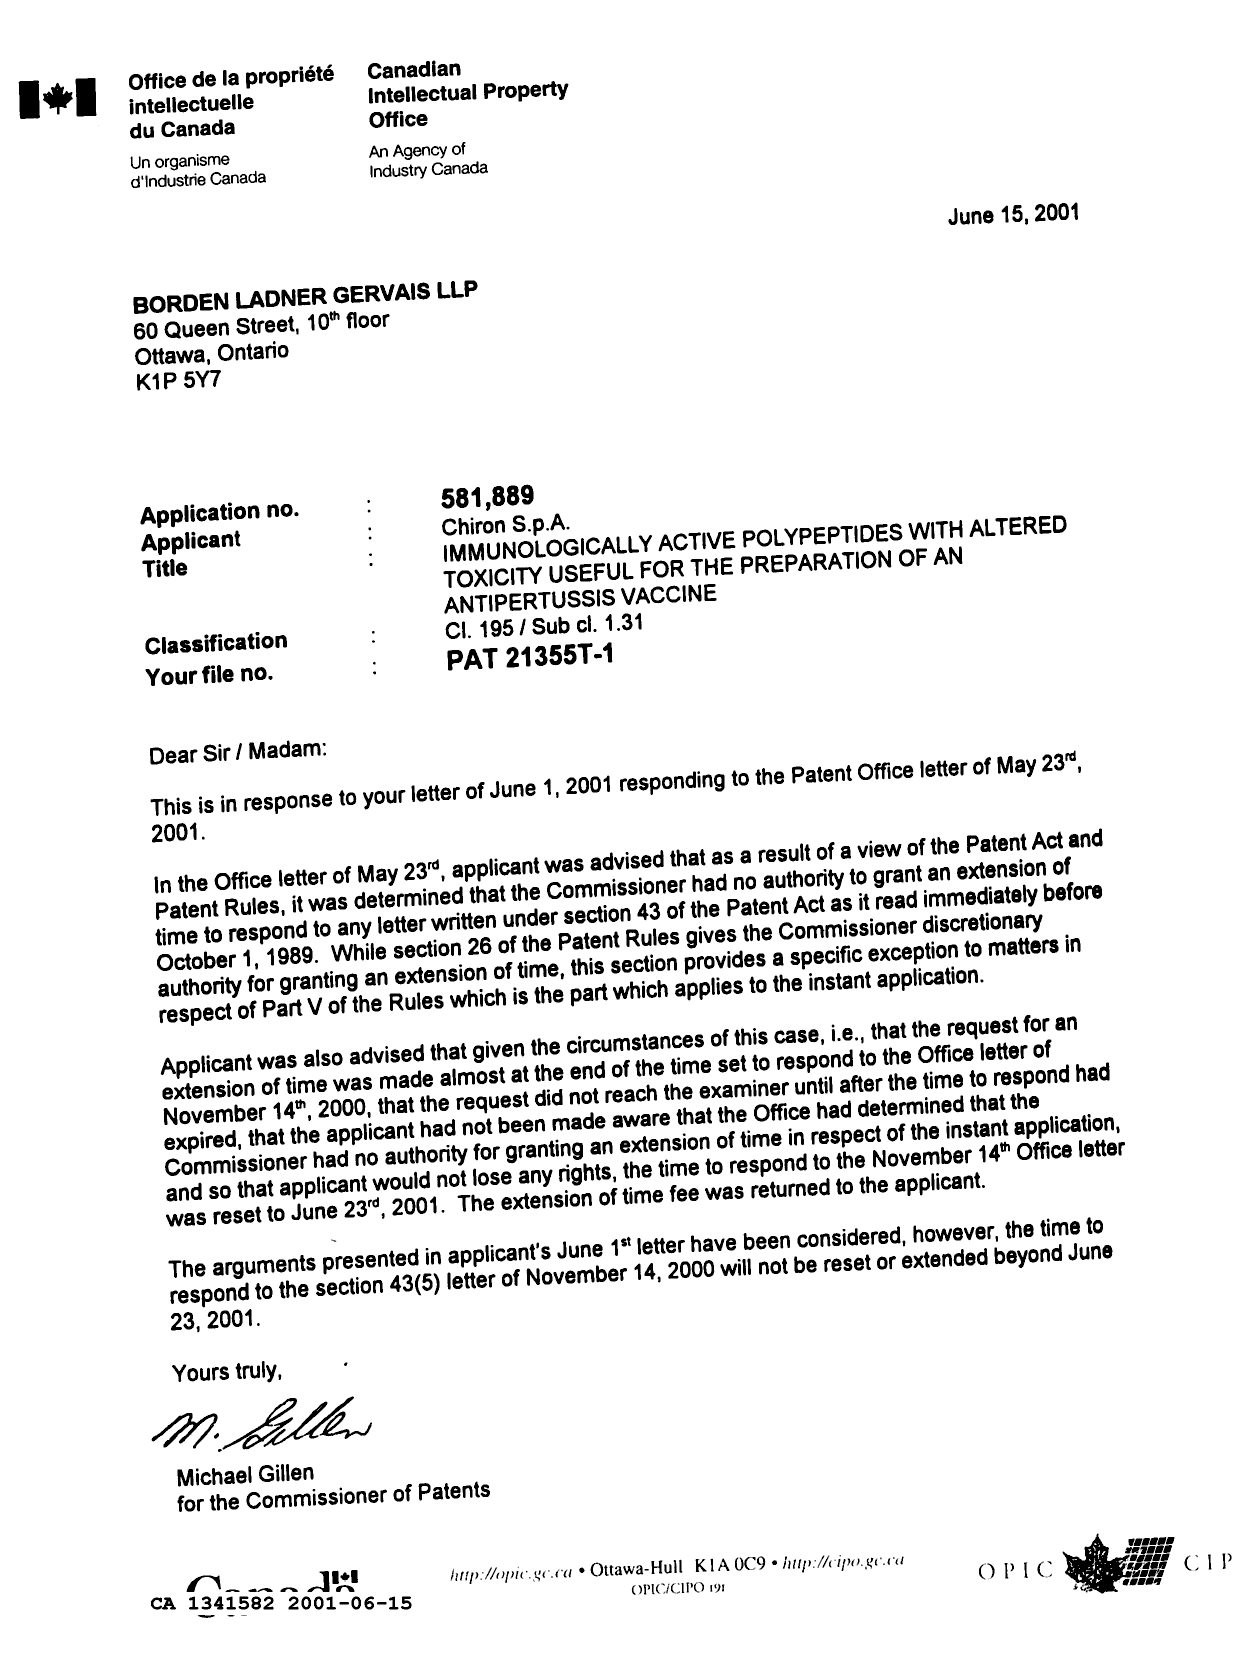 Document de brevet canadien 1341582. Lettre du bureau 20010615. Image 1 de 1